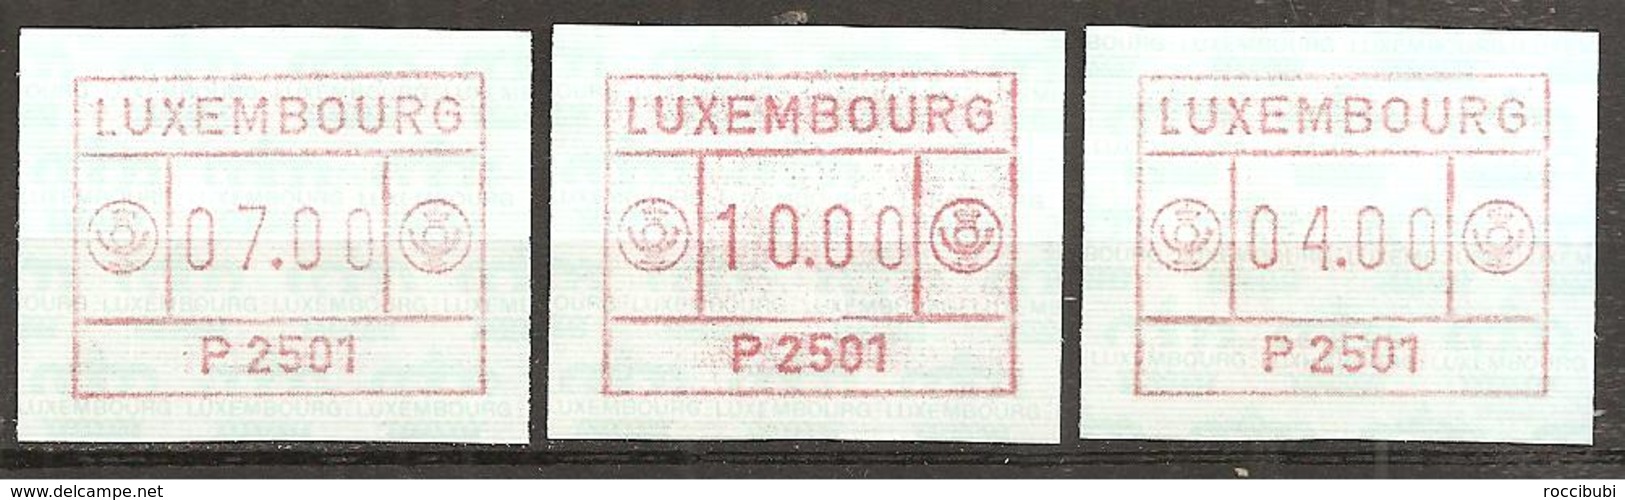 Luxemburg 1983 // Michel ATM 1 ** - Vignettes D'affranchissement